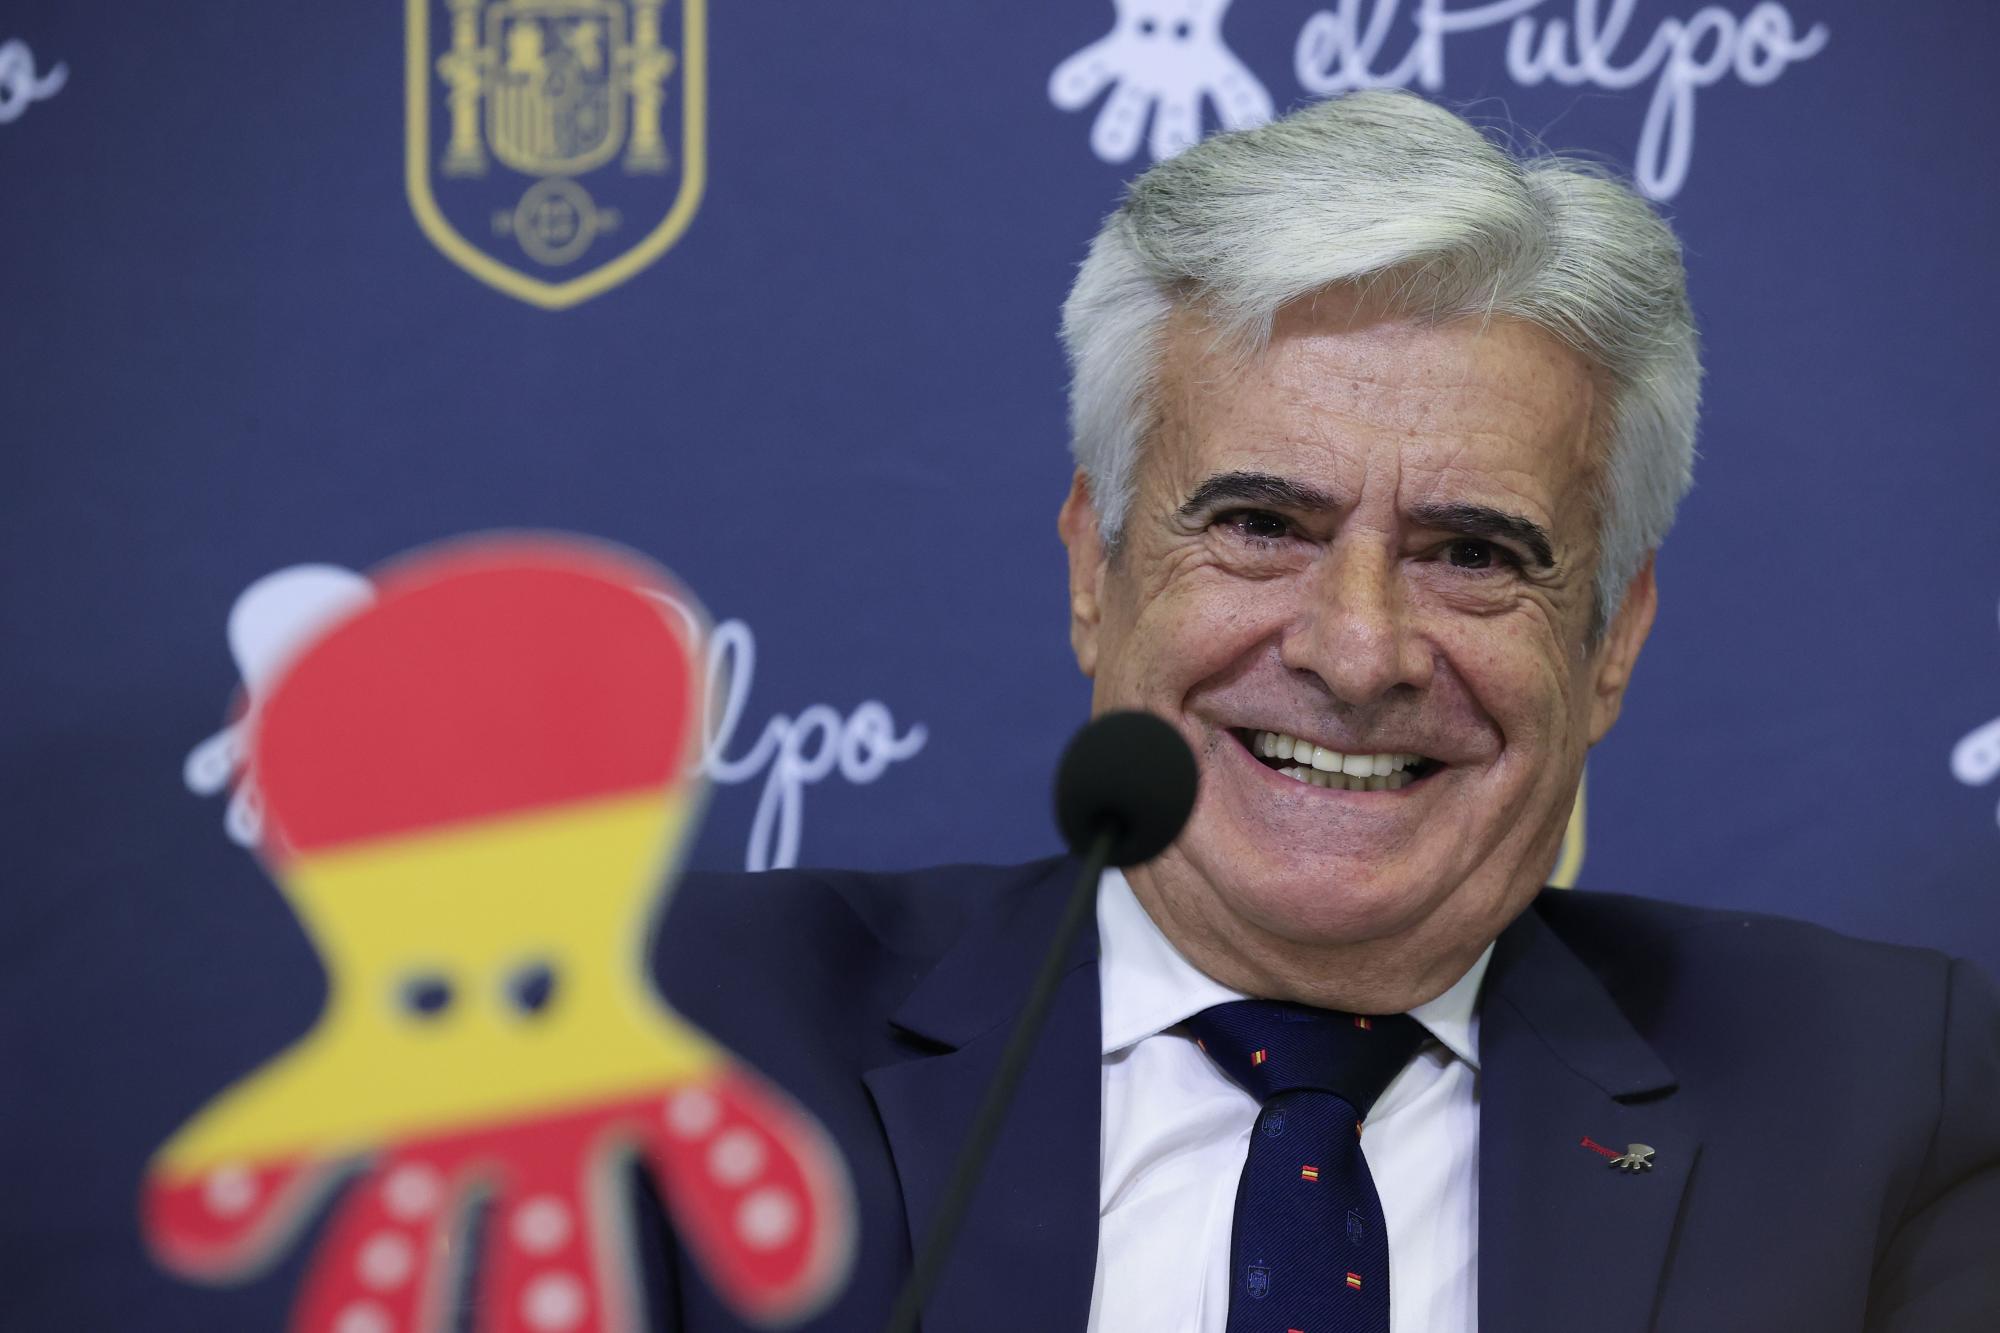 Pedro Rocha es el nuevo presidente de la Federación Española del Futbol. Noticias en tiempo real